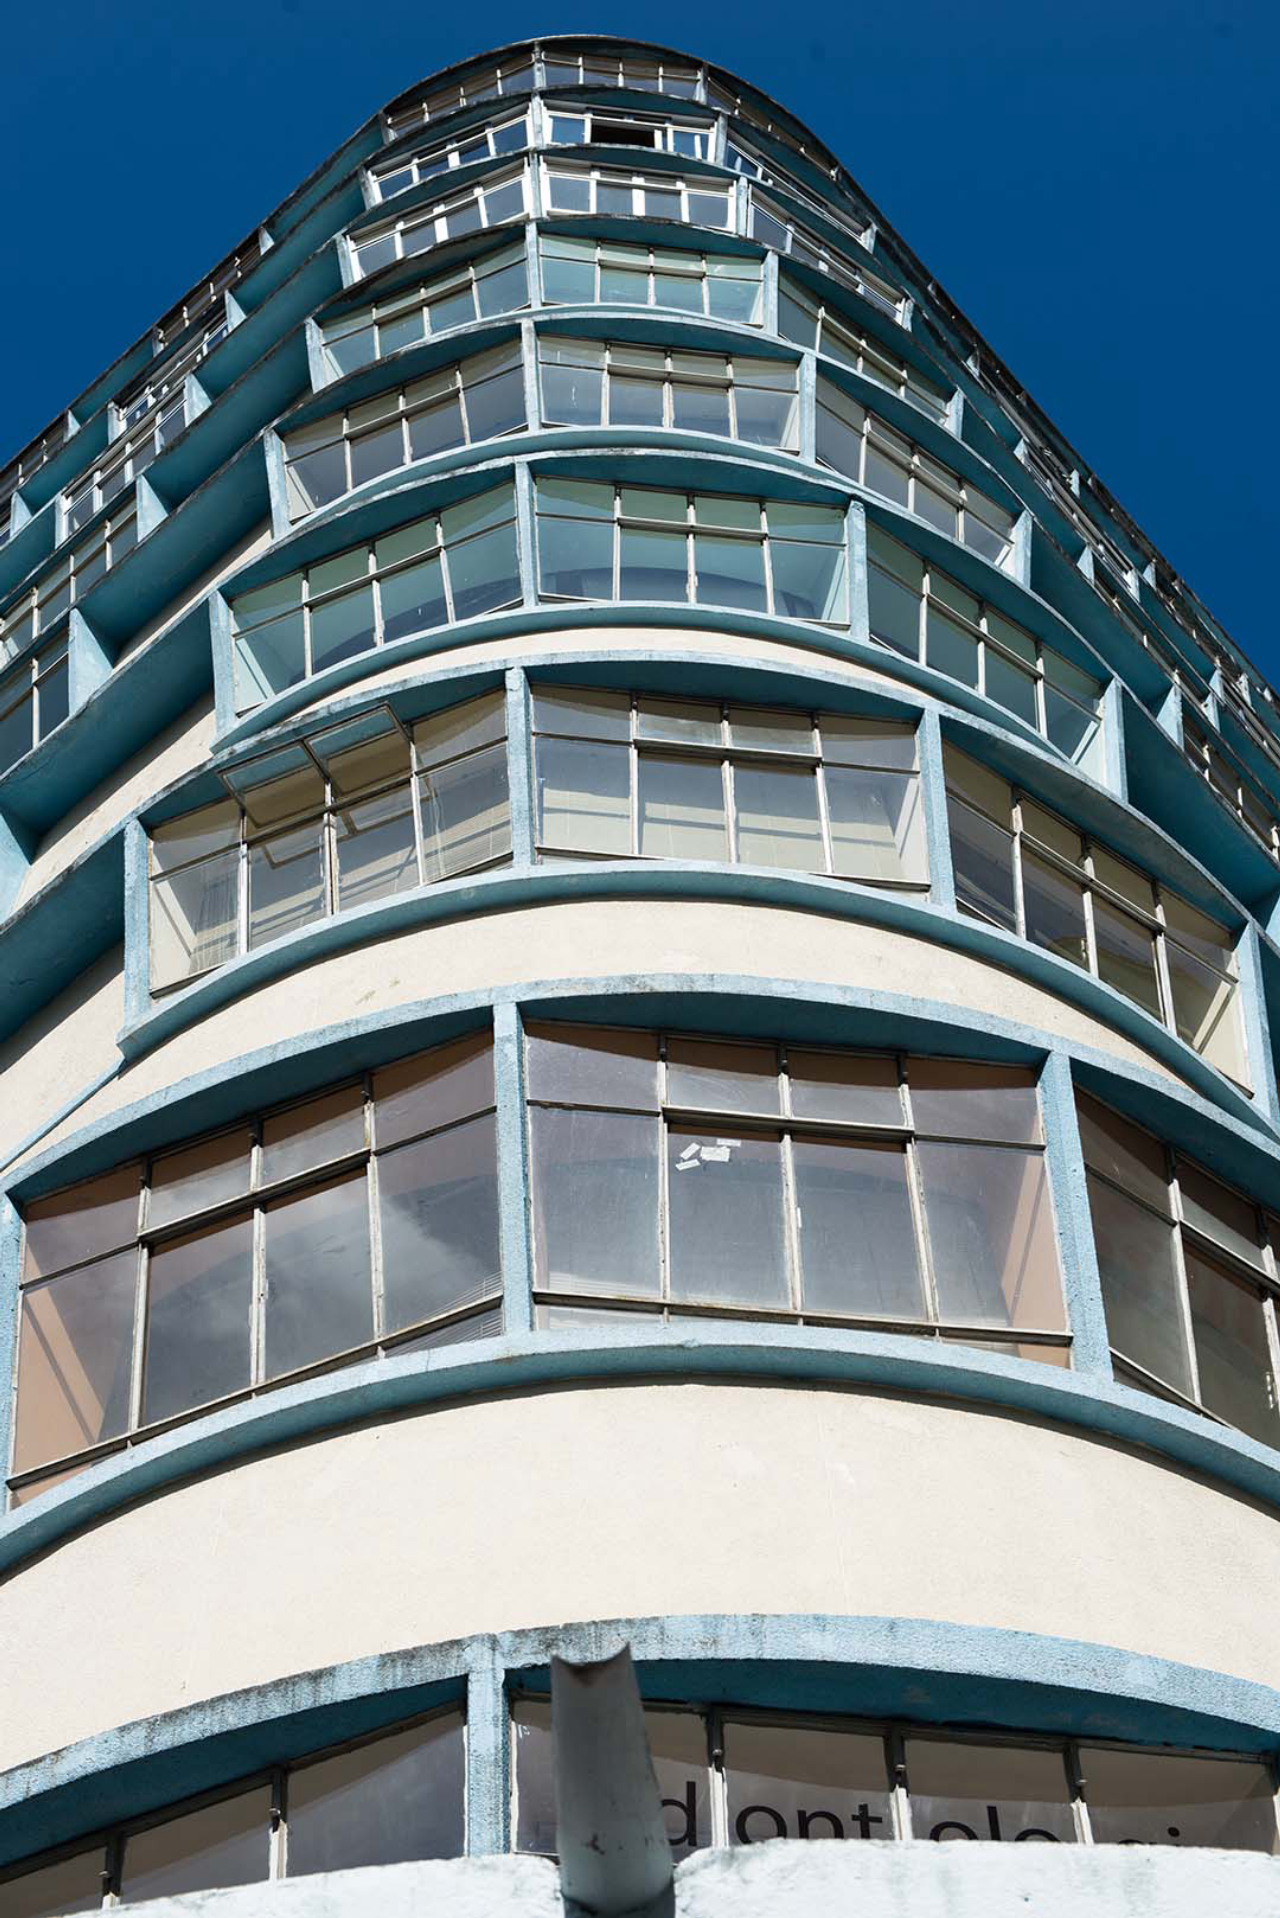 Edifício Brasilino de Moura, conhecido como "Balança mas não cai”, devido às suas janelas inclinadas. Foto: Washington Takeuchi.